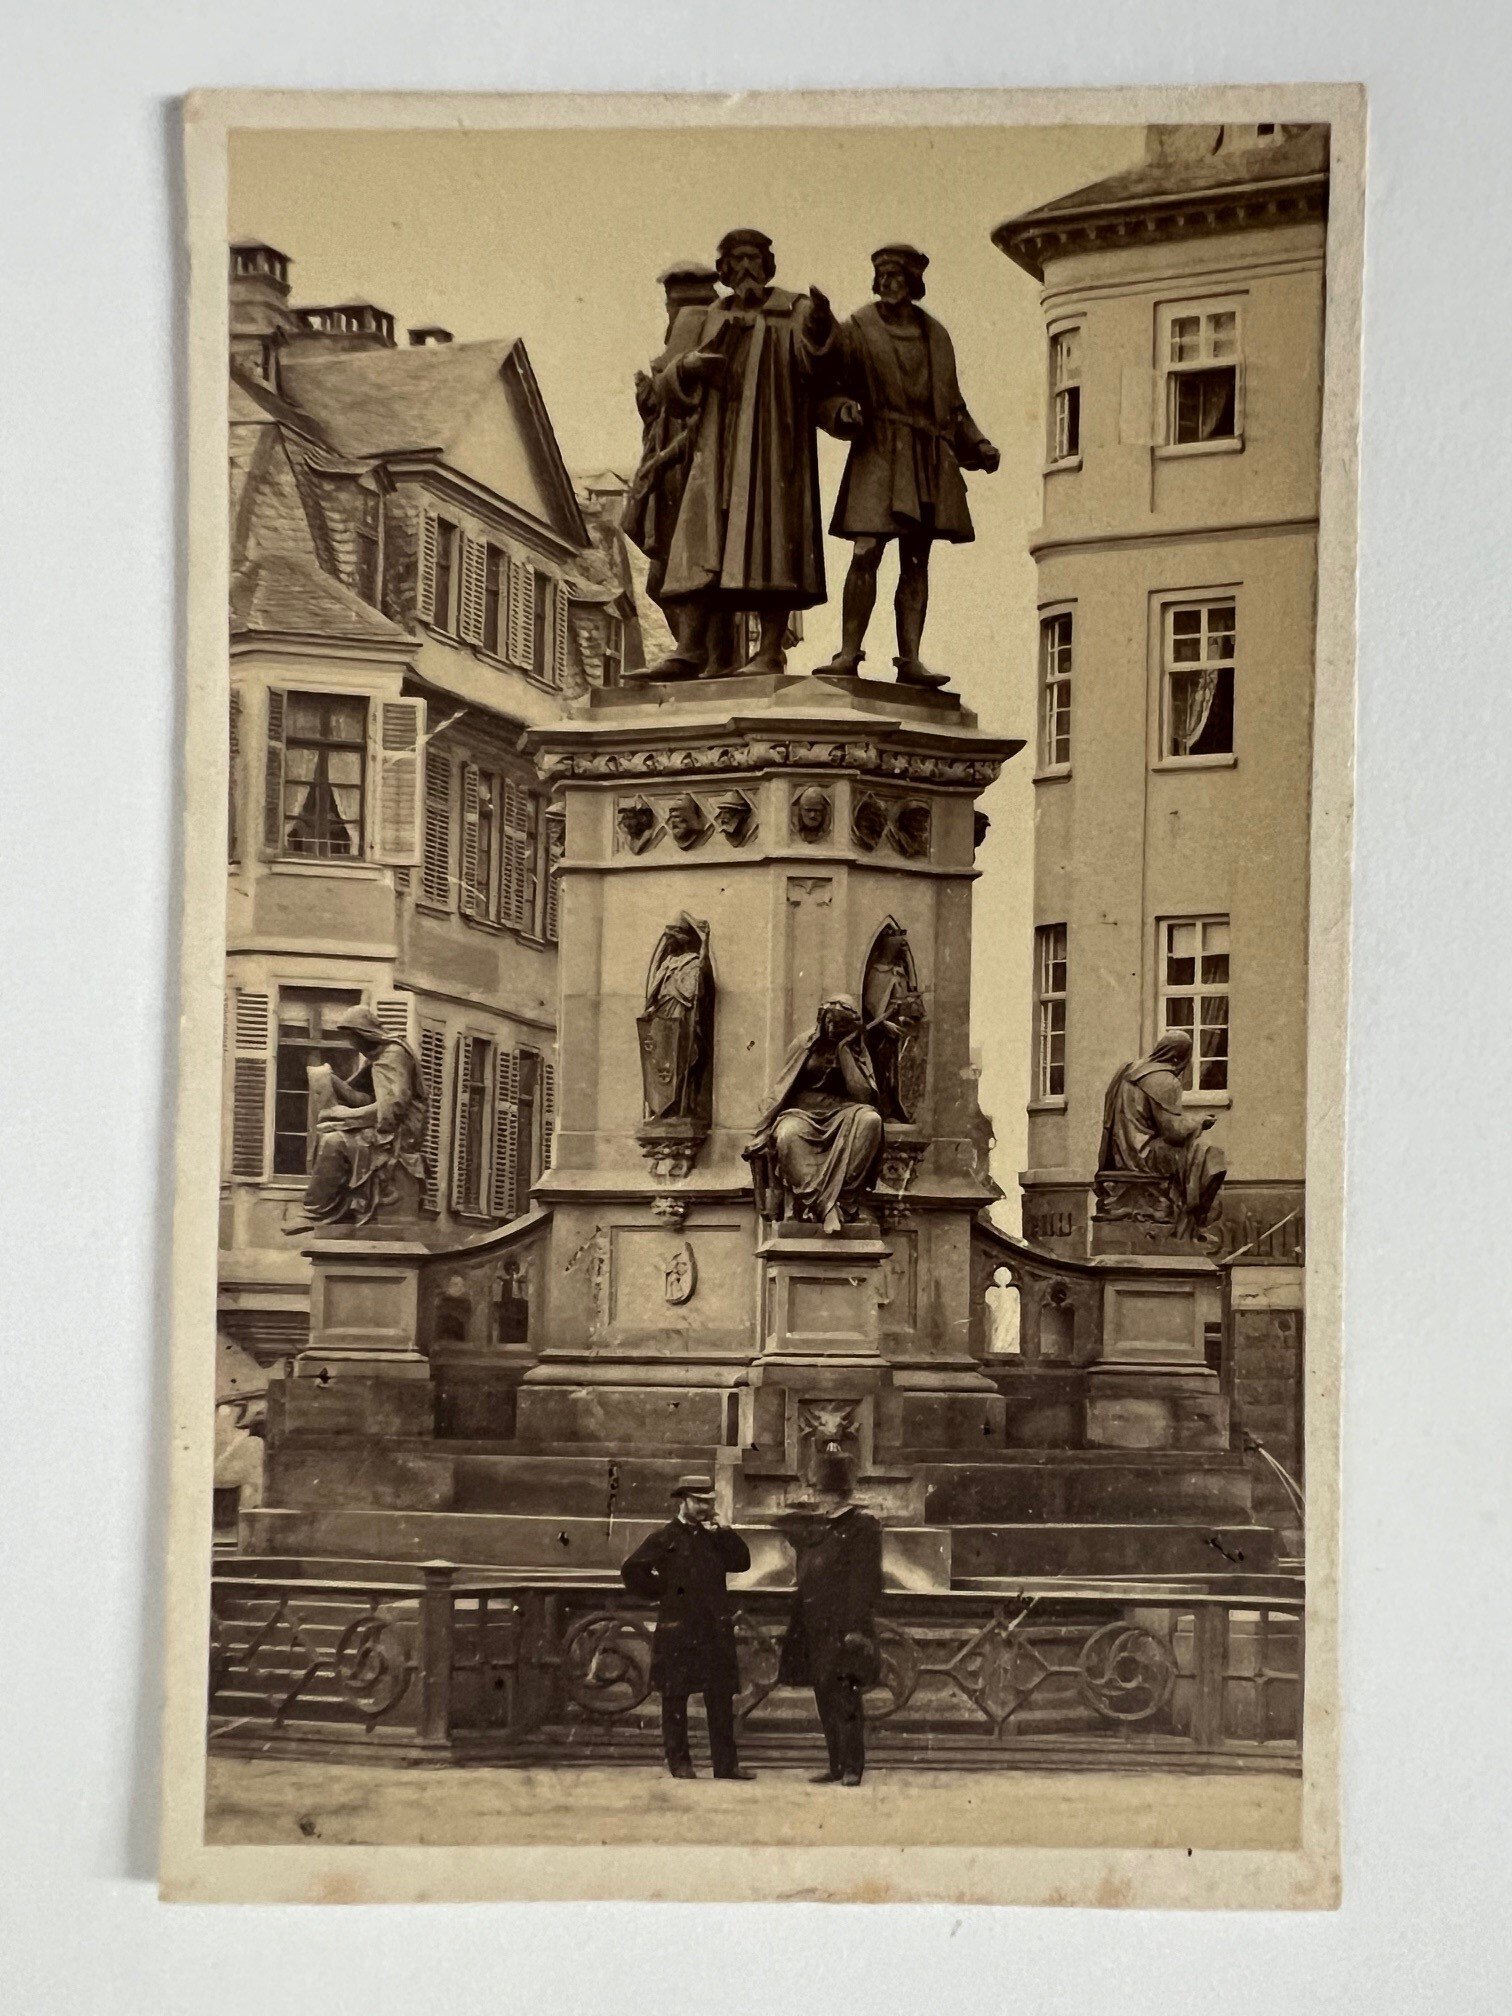 CdV, Friedrich Wilhelm Maas, Frankfurt, Das Guttenberg-Denkmal, ca. 1865. (Taunus-Rhein-Main - Regionalgeschichtliche Sammlung Dr. Stefan Naas CC BY-NC-SA)